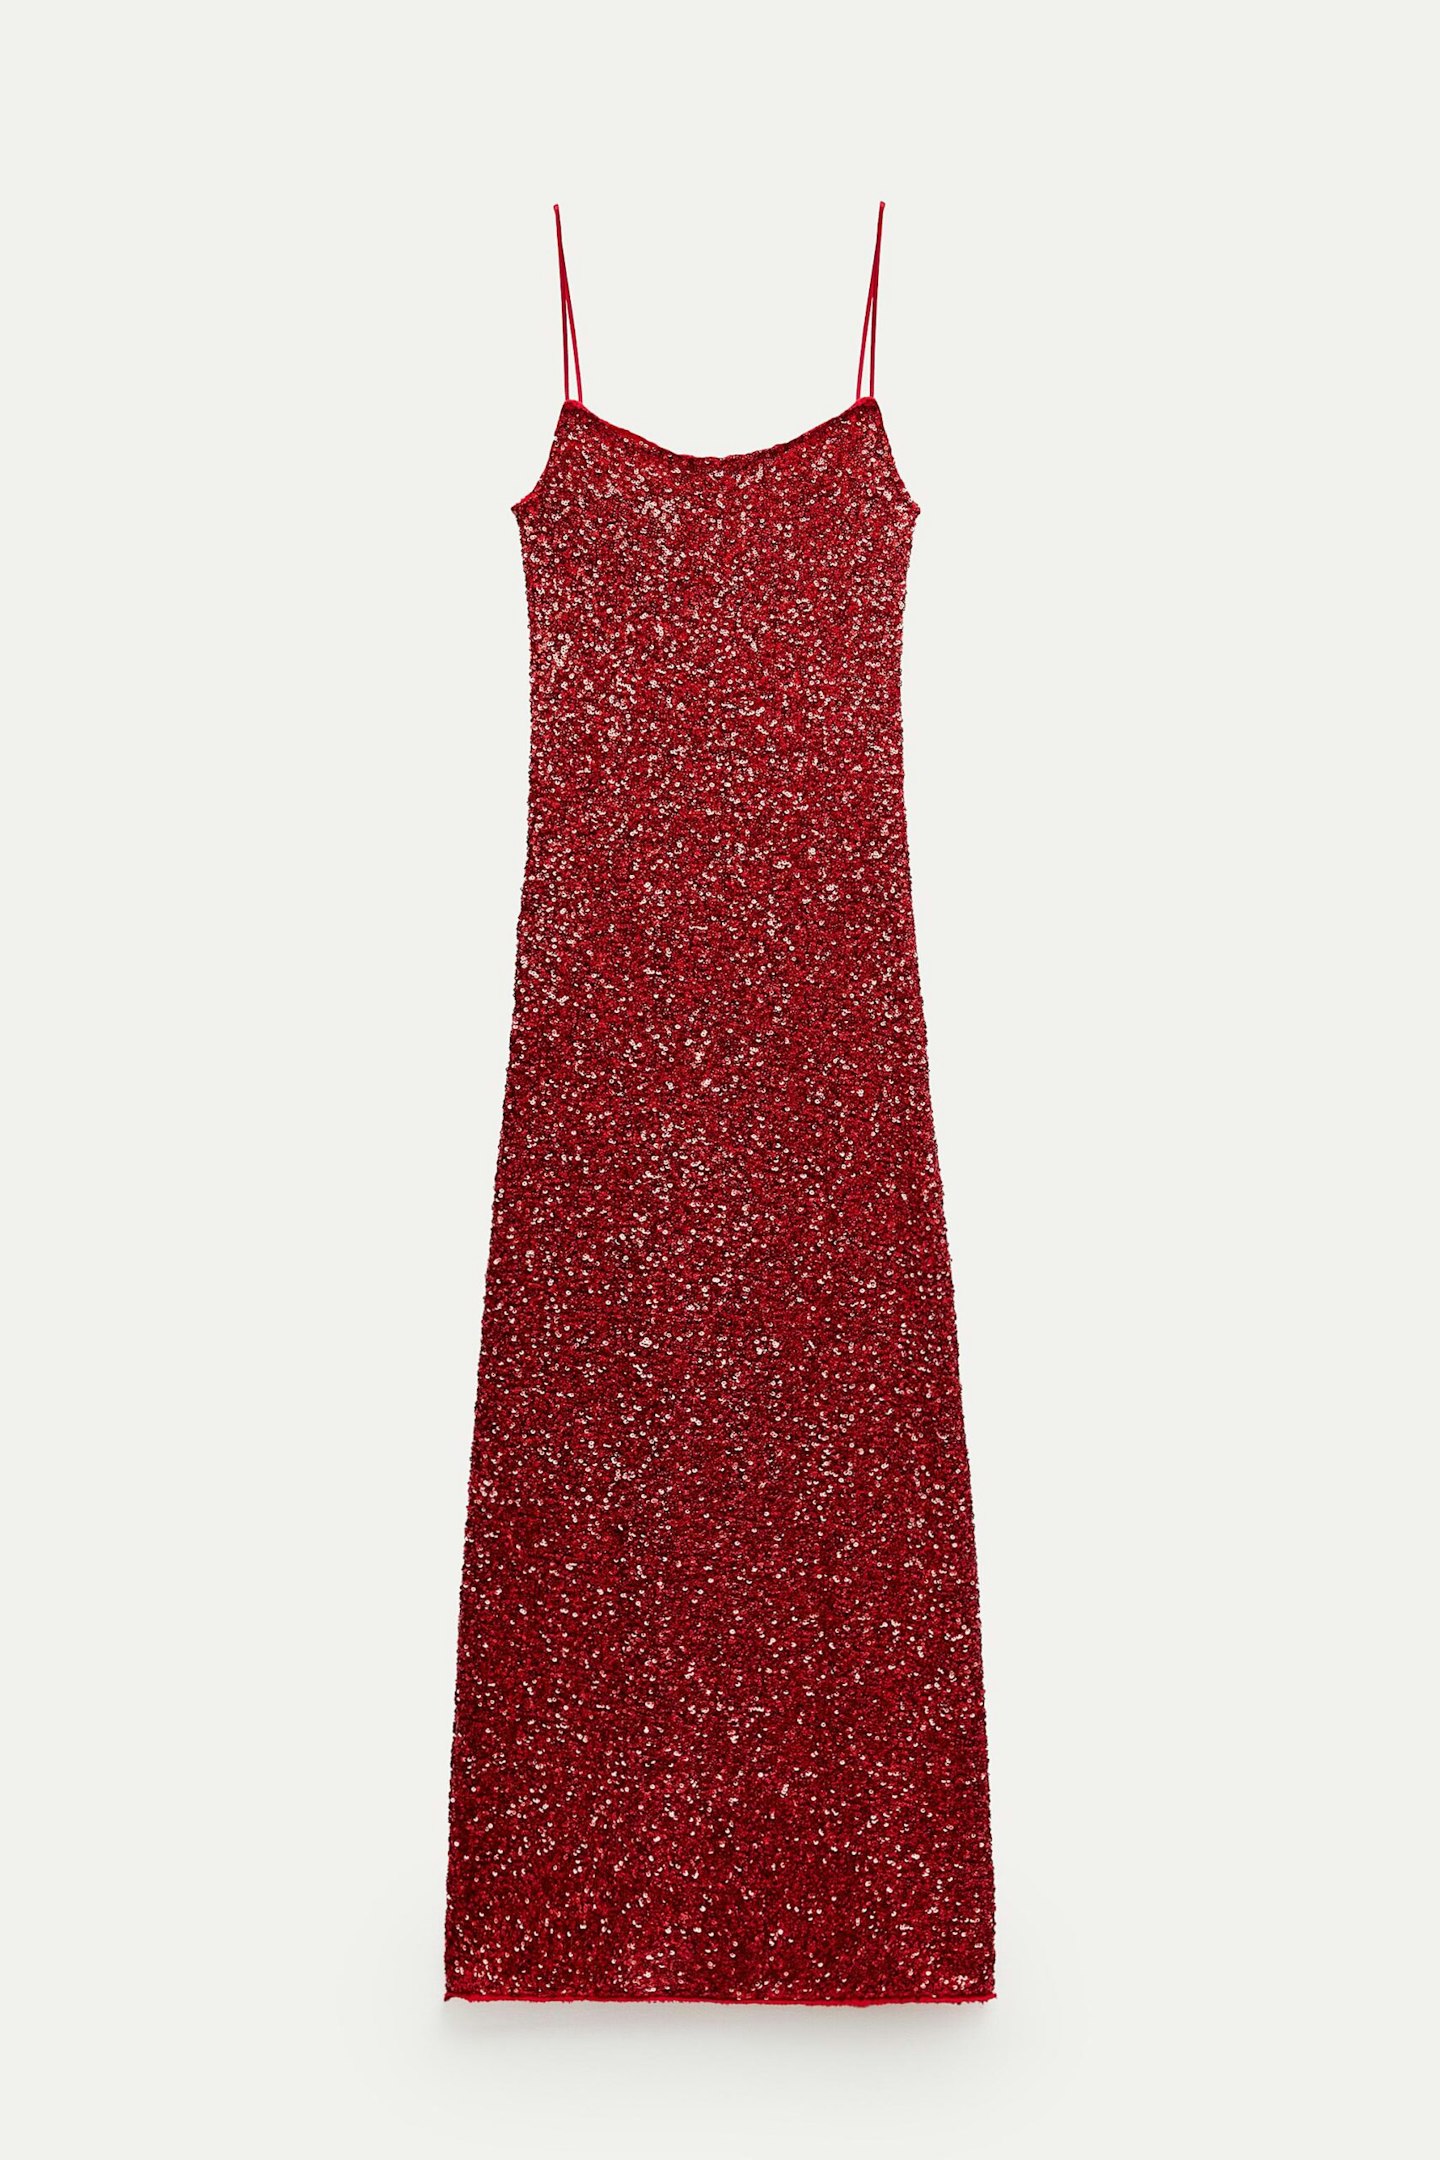 Zara, Sequin Dress